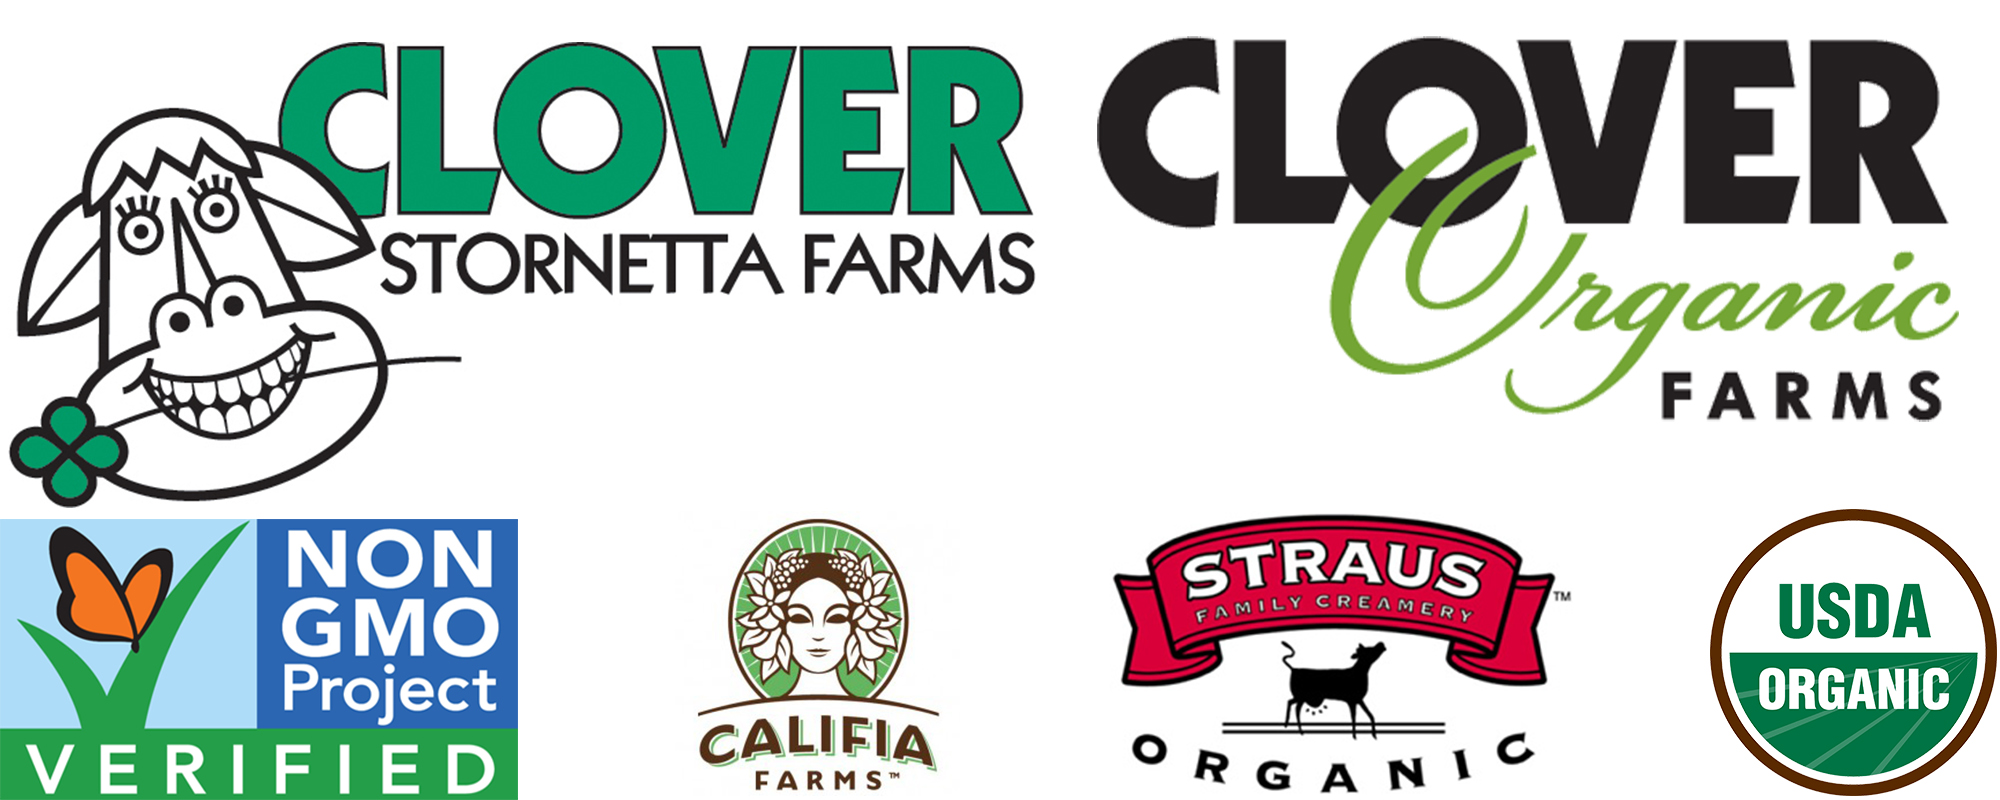 brand logos including Clover Strauss, and Califia Farms